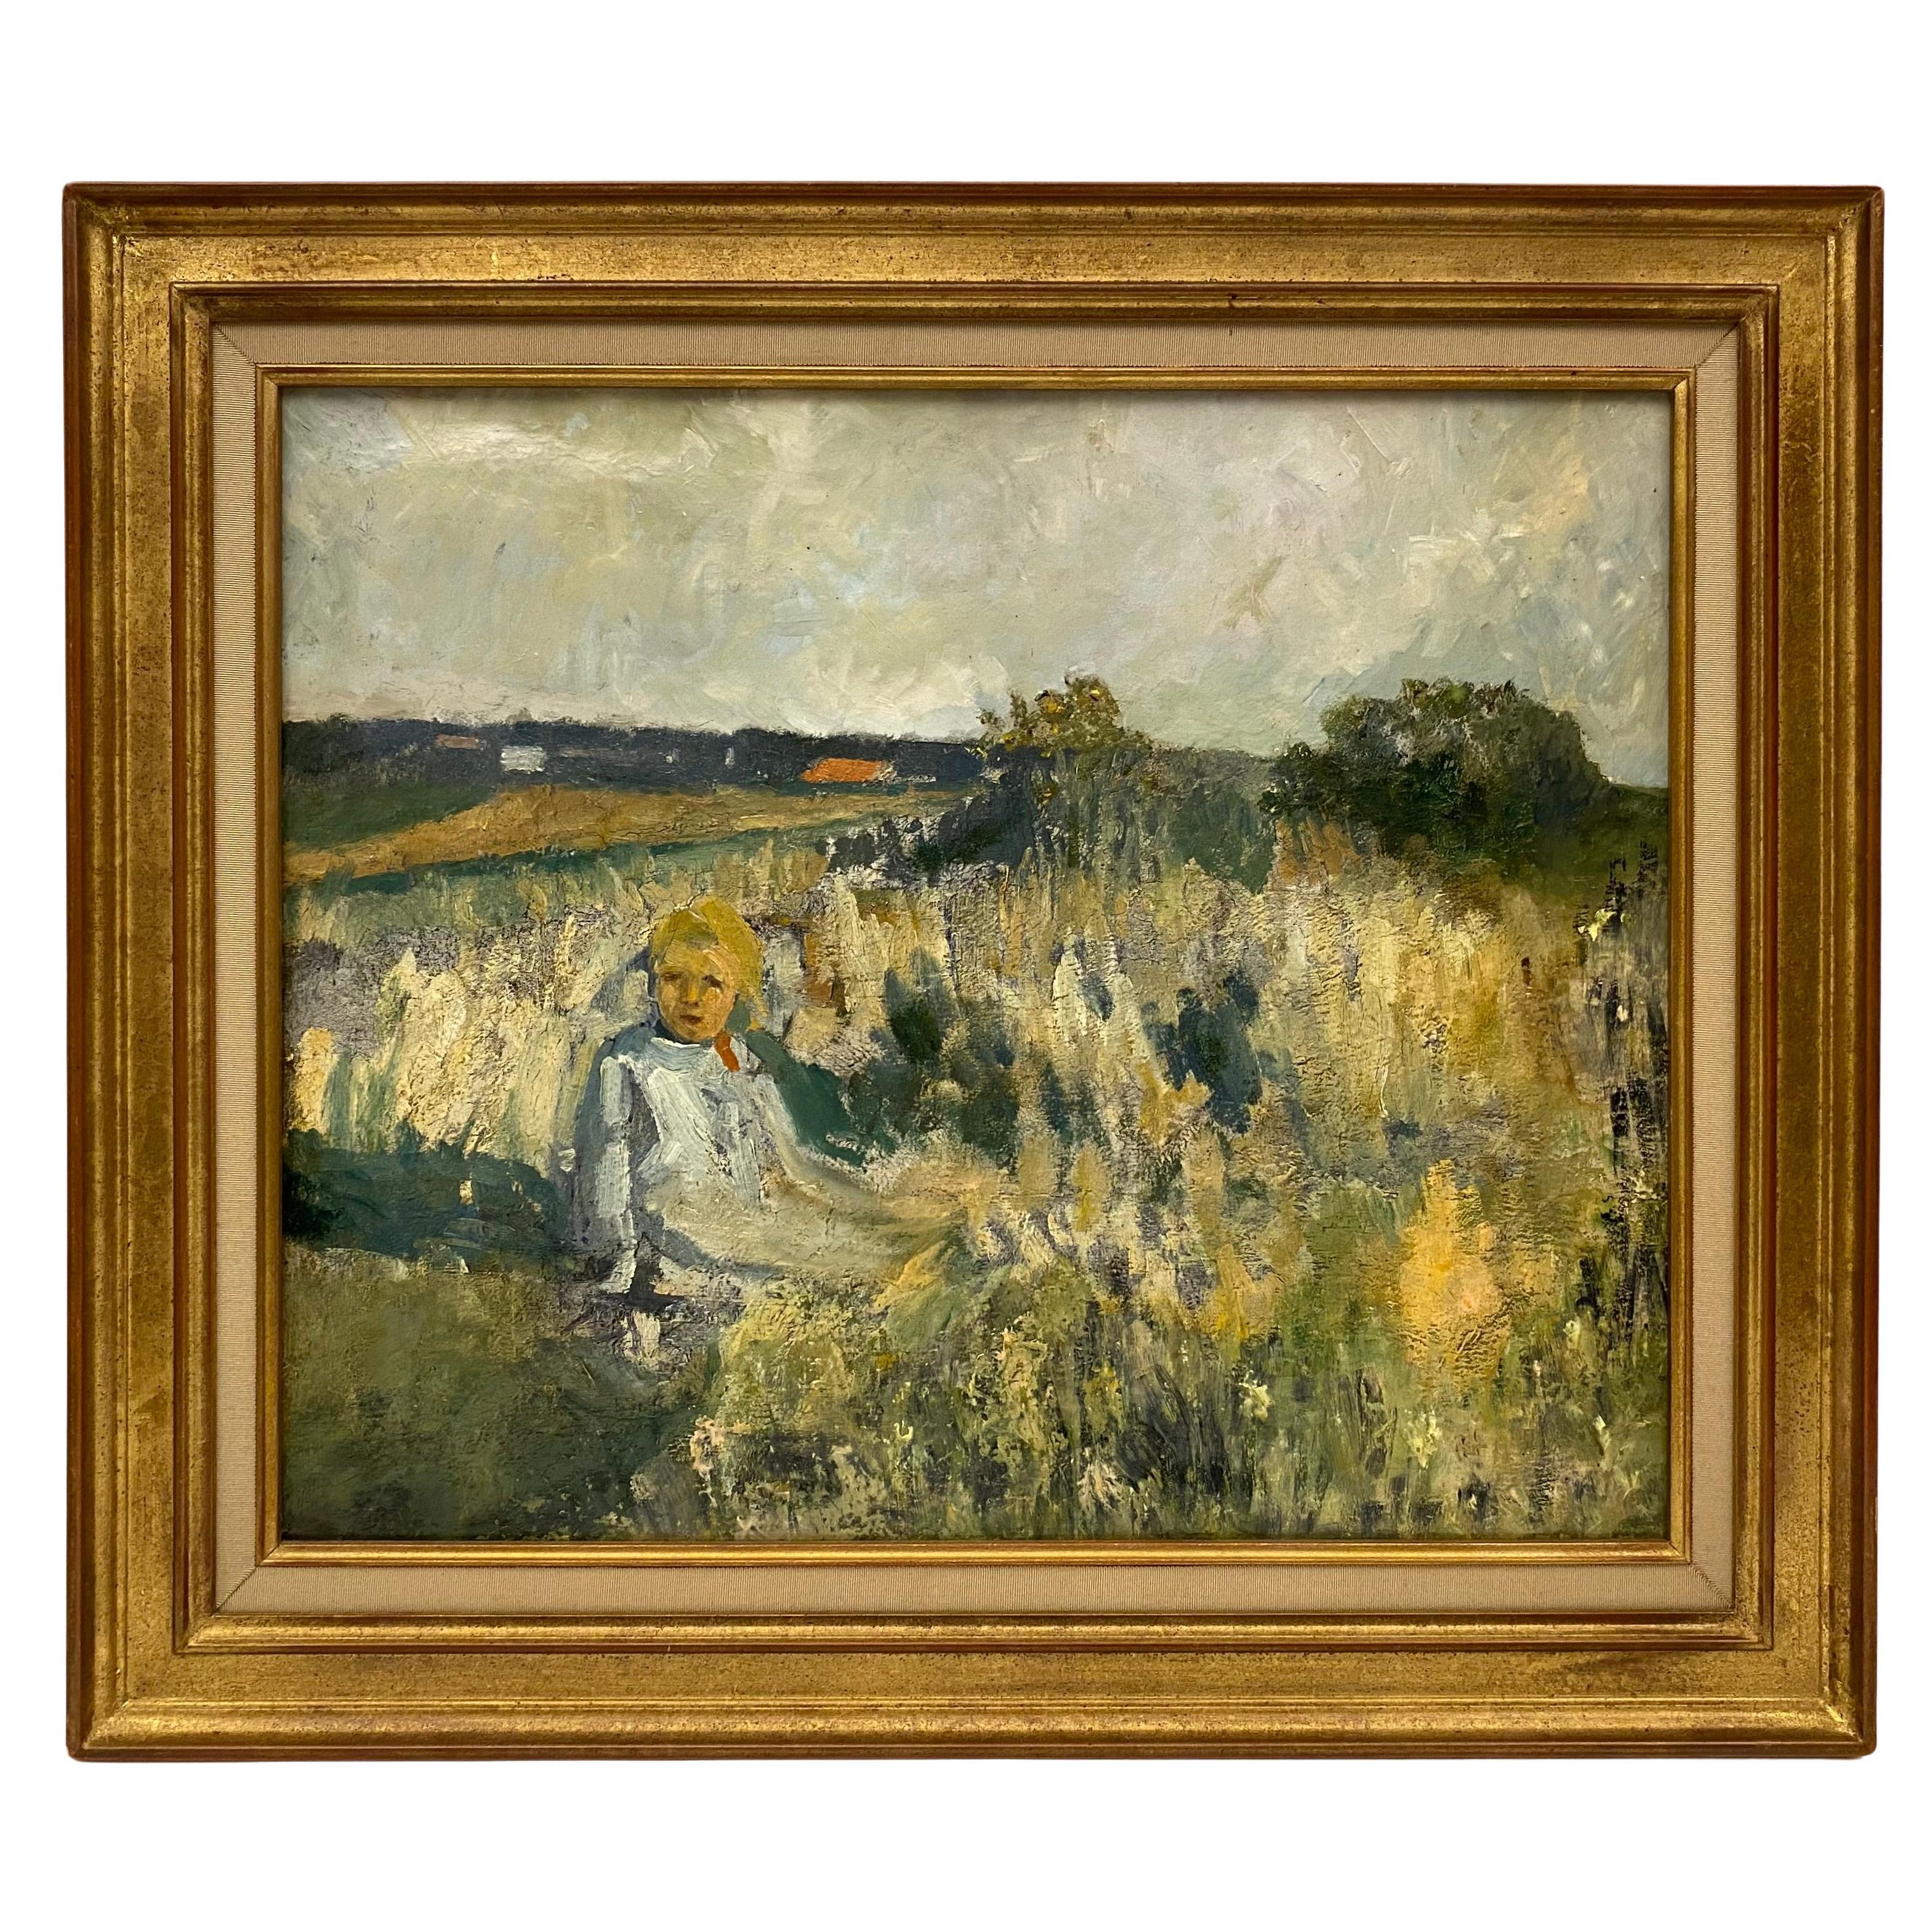 Französisch Post Impressionist Öl auf Leinwand Gemälde, Kind in einem Feld in der Provence